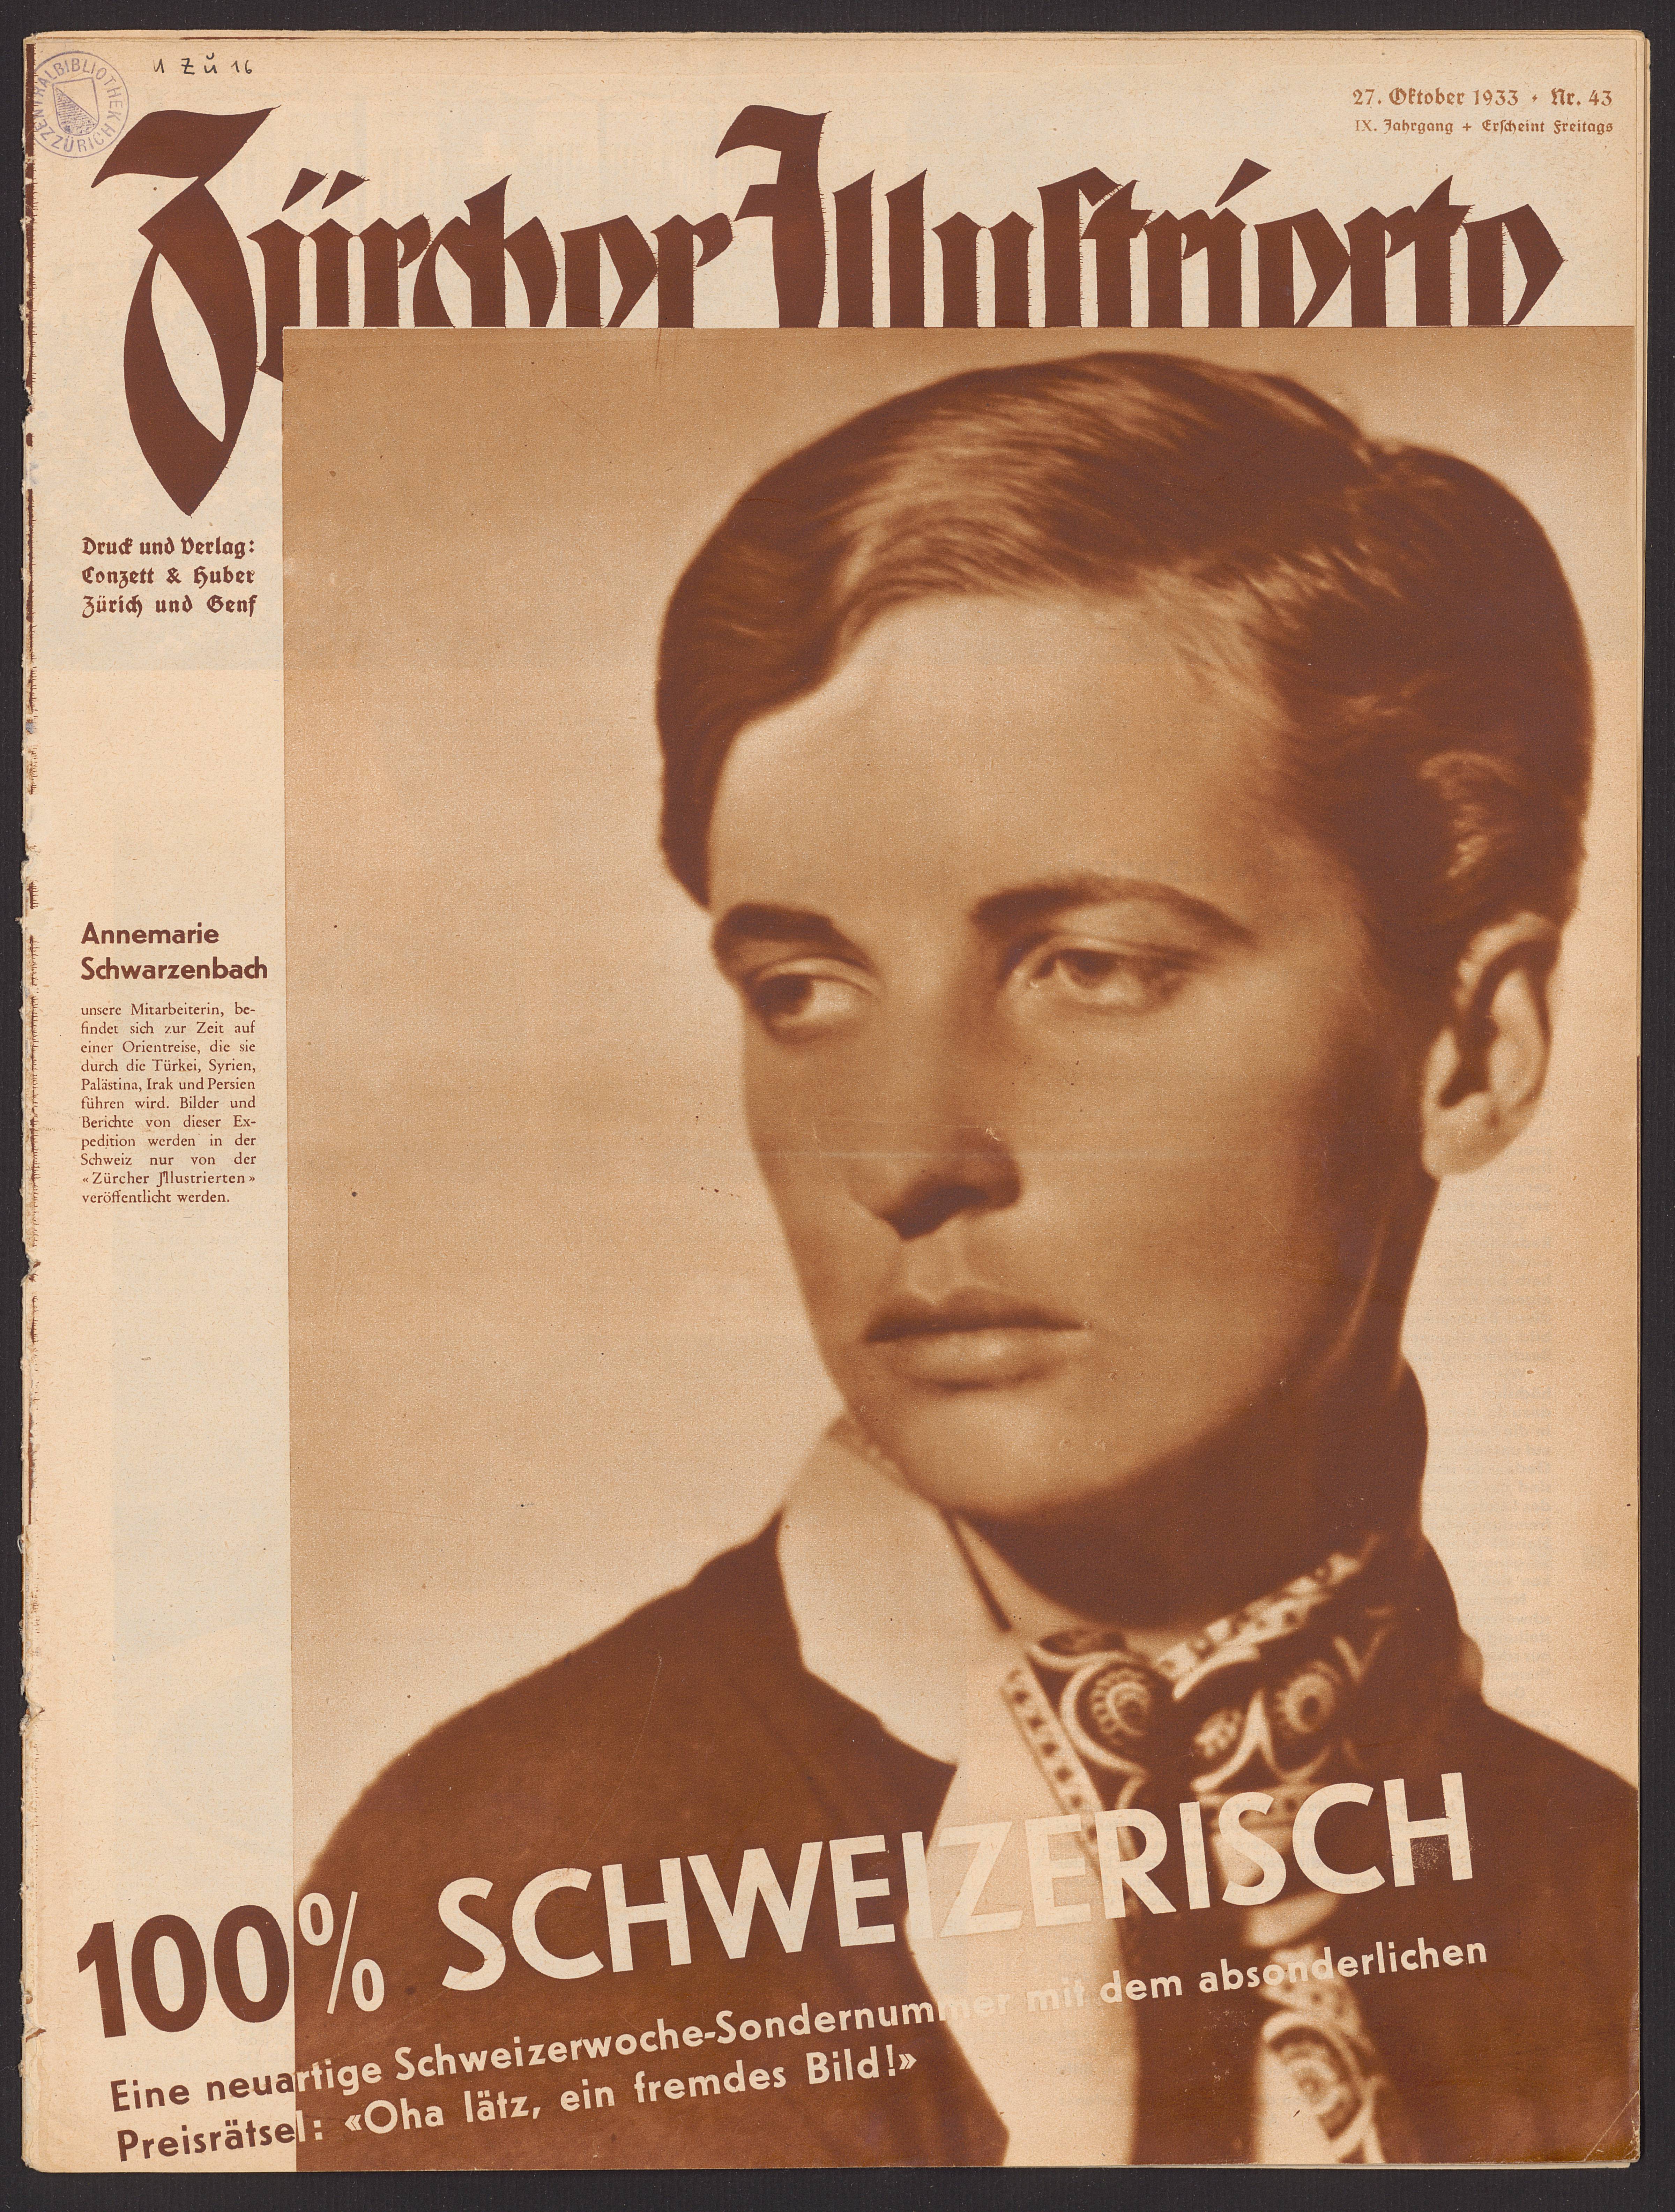 Schwarzenbach Portrait Zürcher Illustrierte 1933